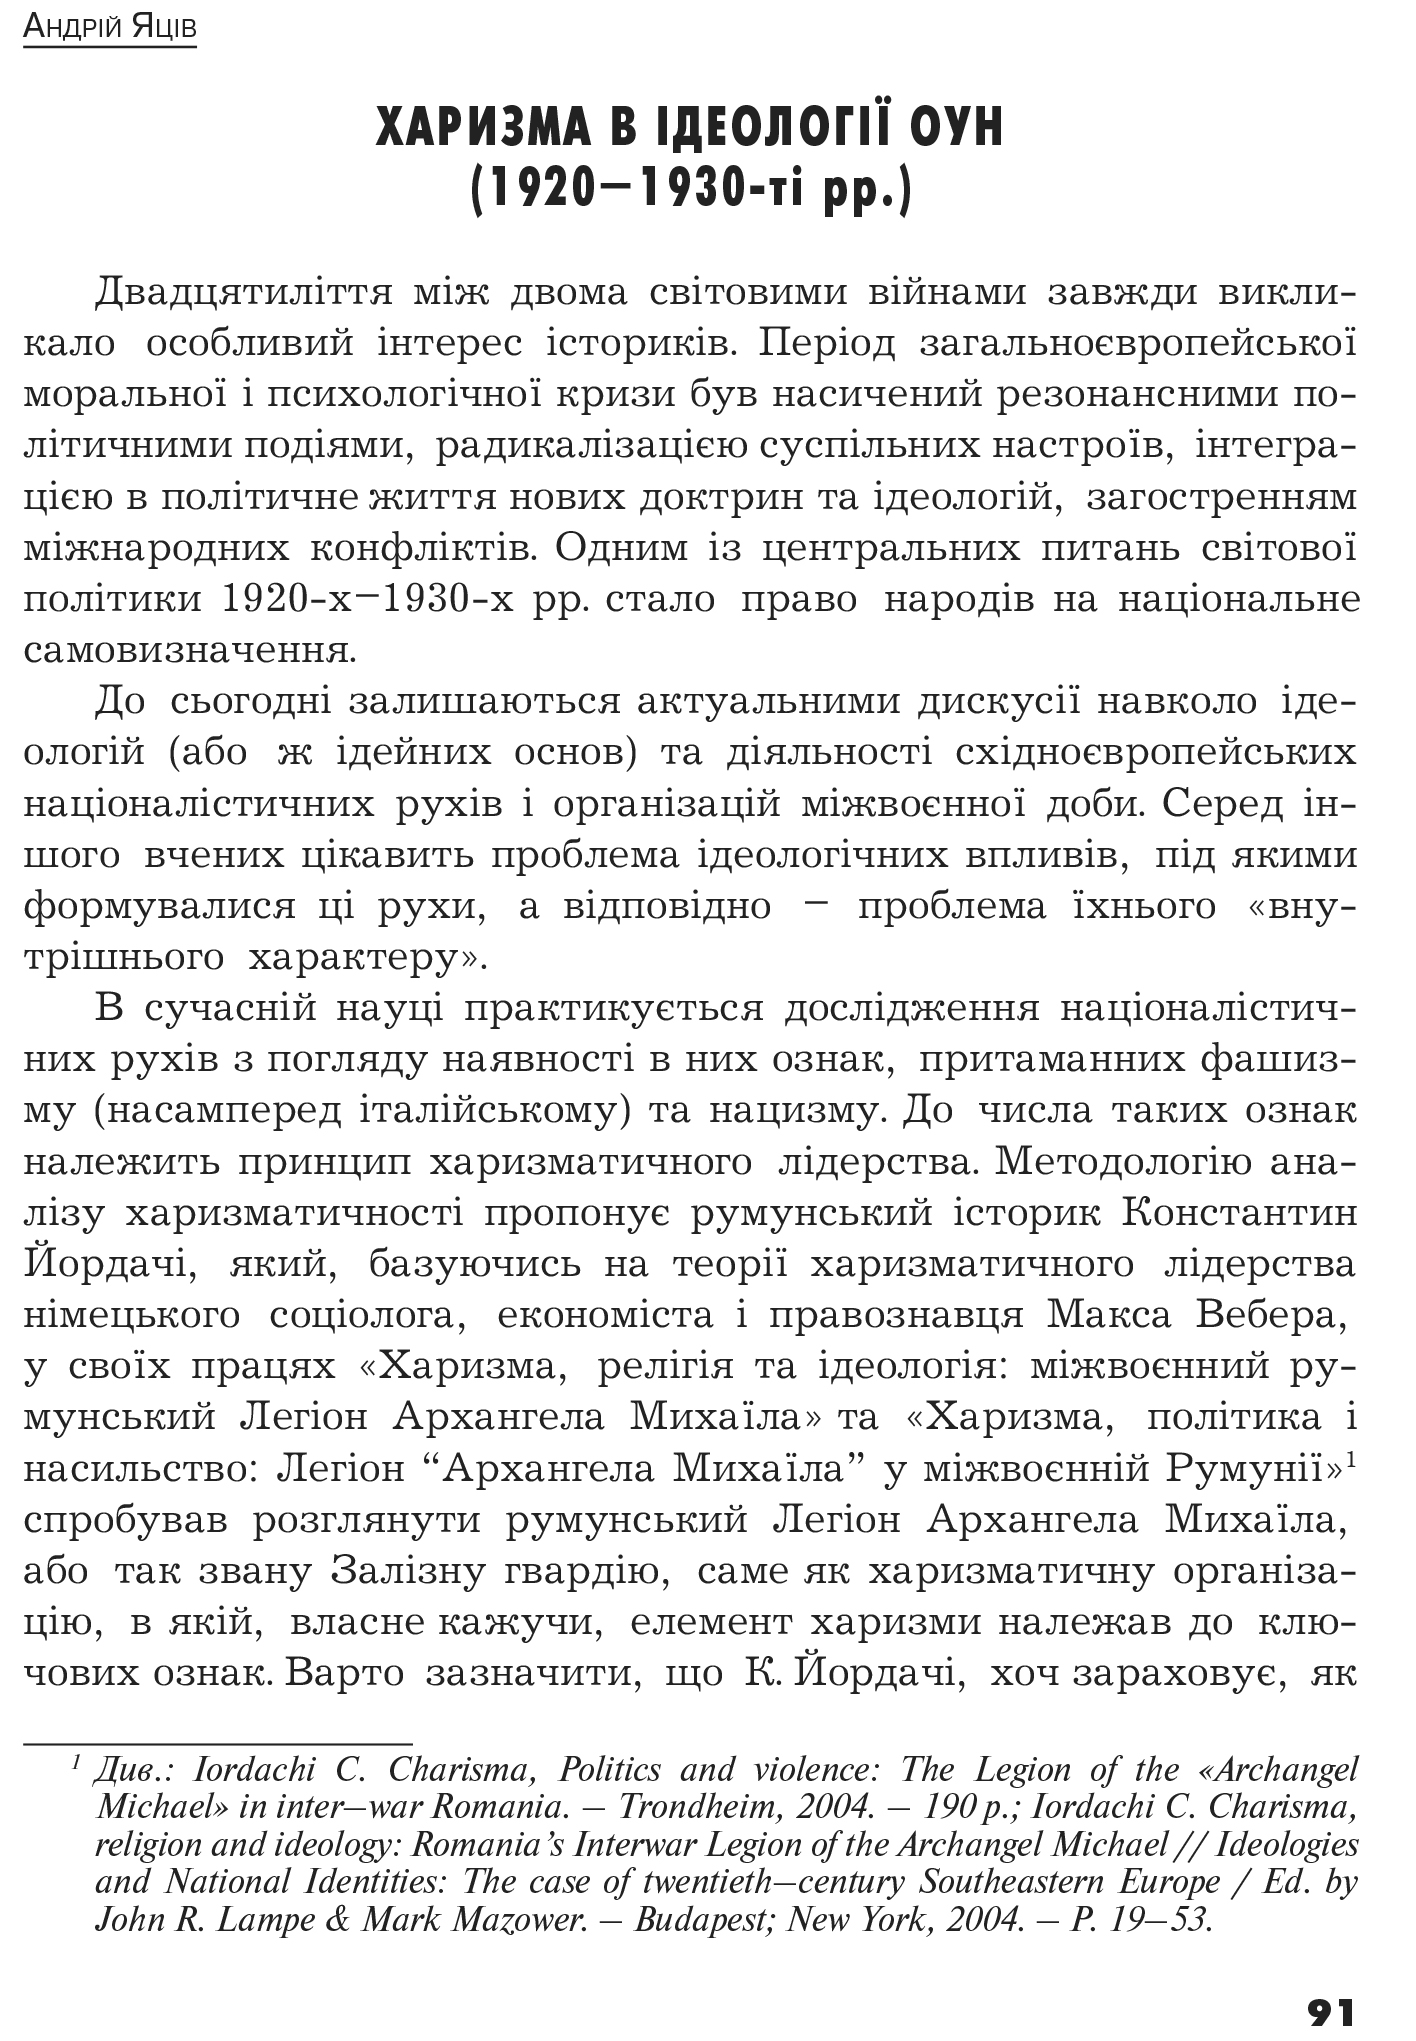 Український визвольний рух №14, ст. 91 - 108